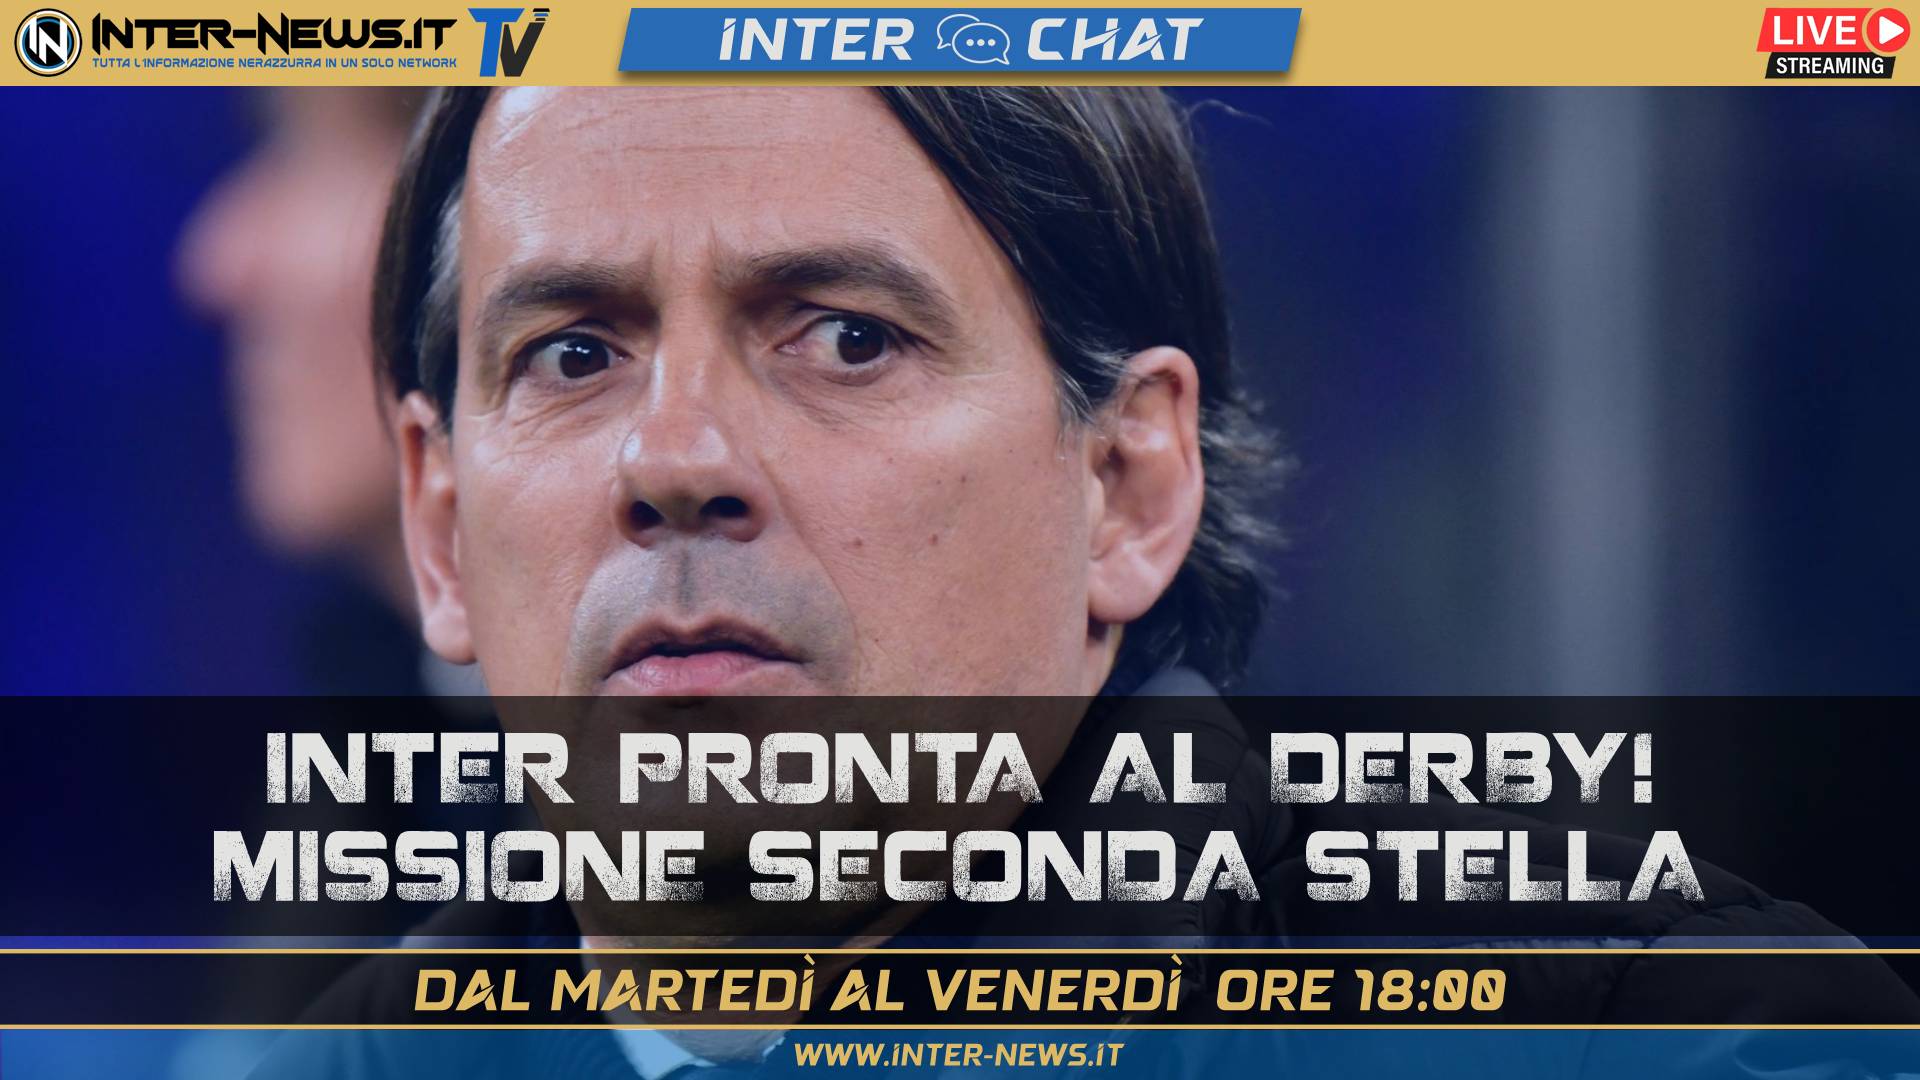 VIDEO ? Inter, derby vicino. Vista seconda stella | Inter Chat